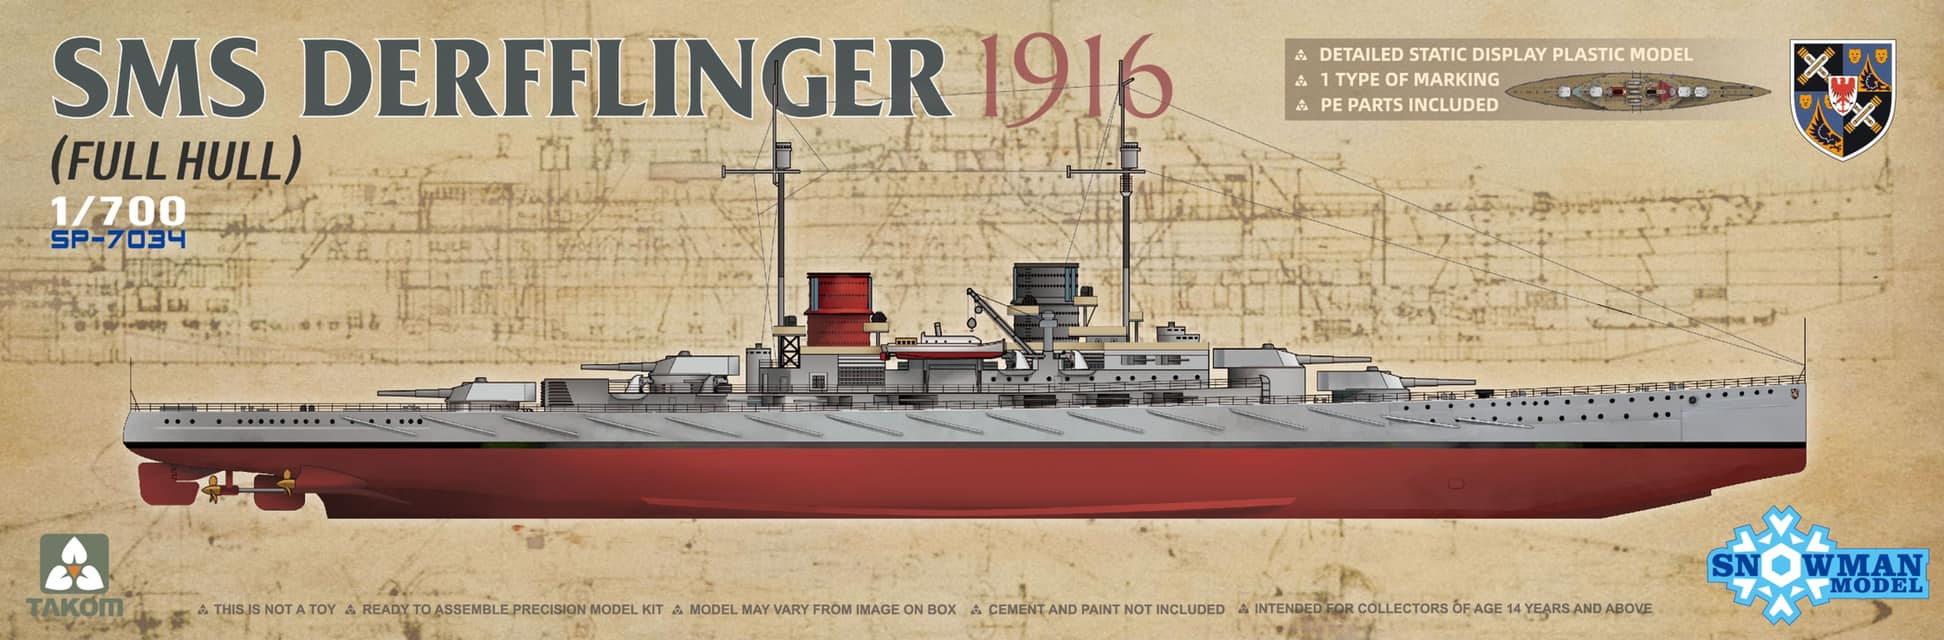 1/700 SMS デアフリンガー 1916 (フルハルモデル)